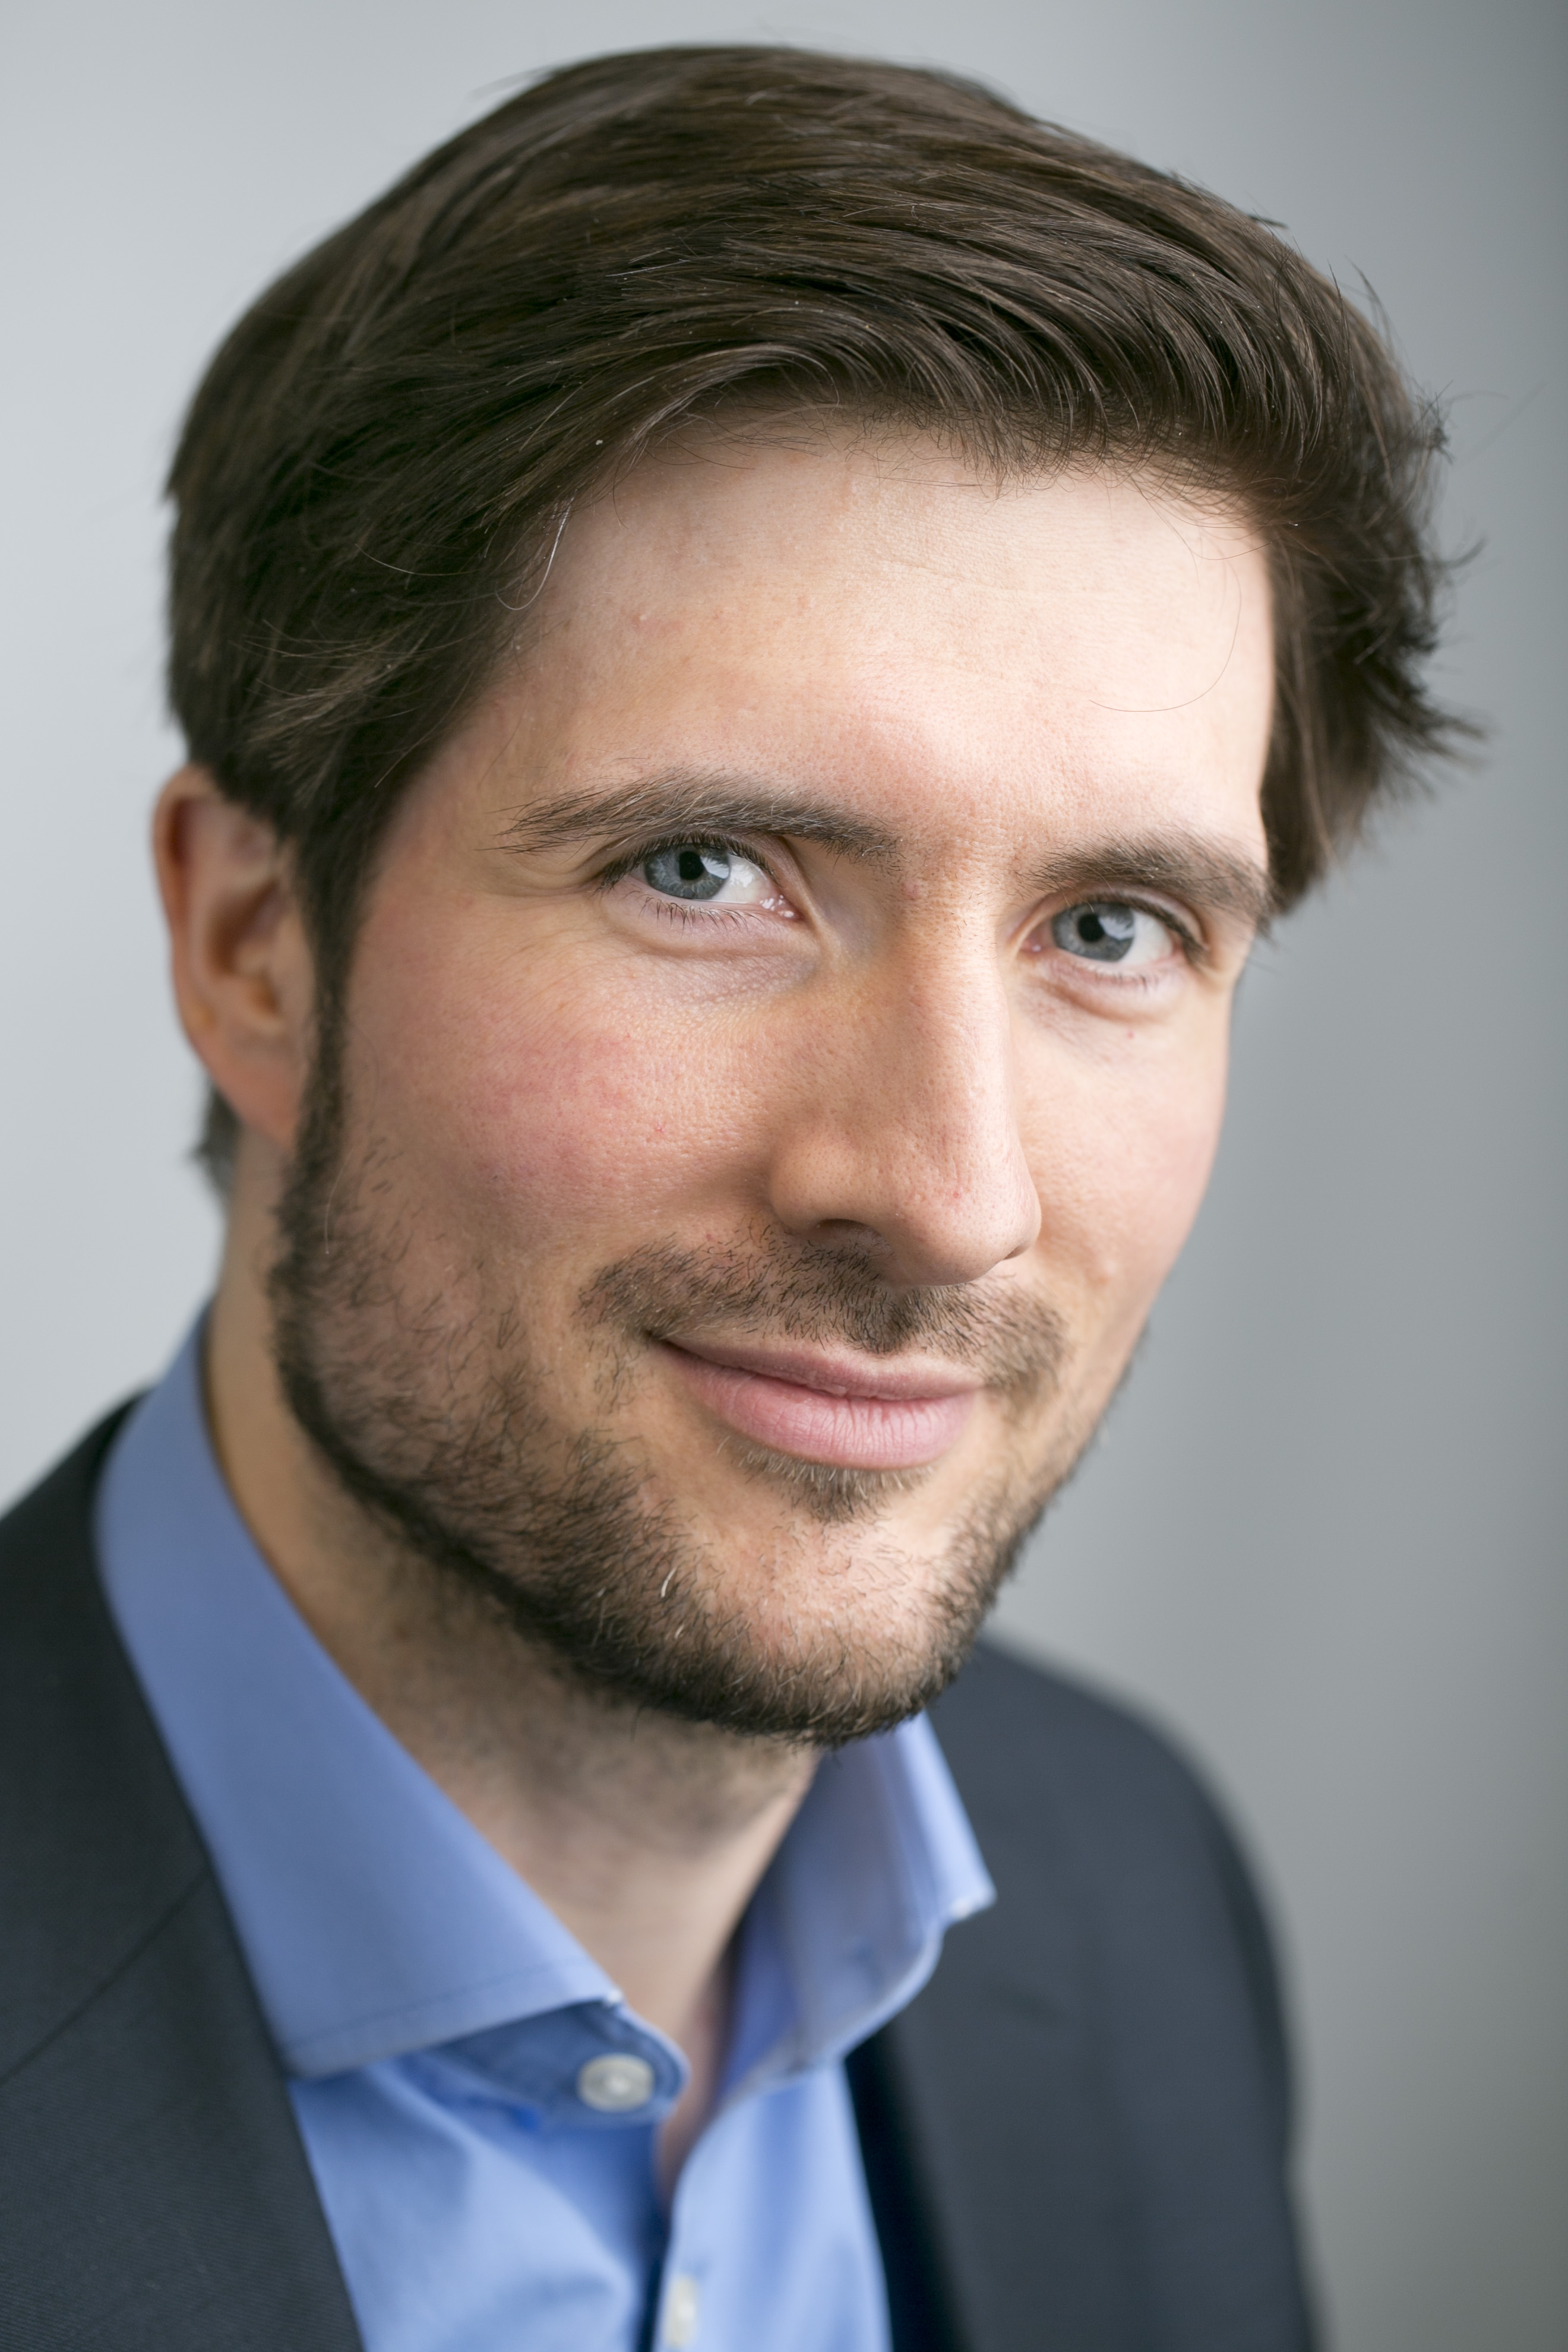 Maarten Lambert - Science & Technology Counselor for Health & Climate Tech in Kopenhagen